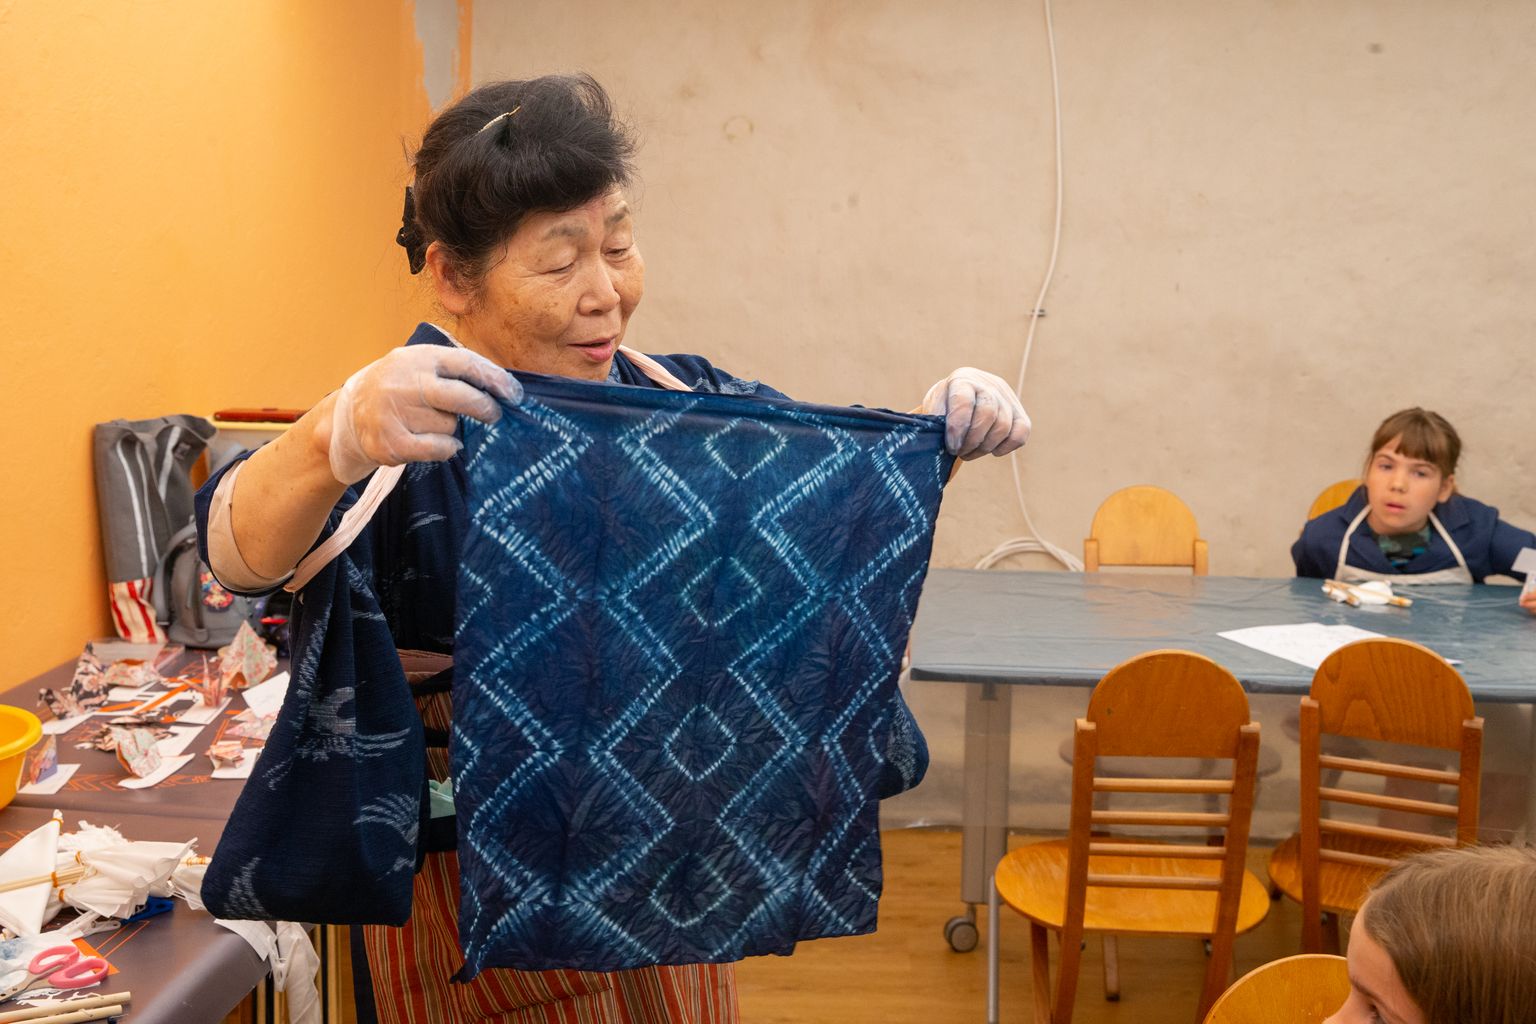 Adamson Ericu muuseumis toimunud kimonode värvimise töötuba viis läbi kunstnik Tokitomo Hisako.